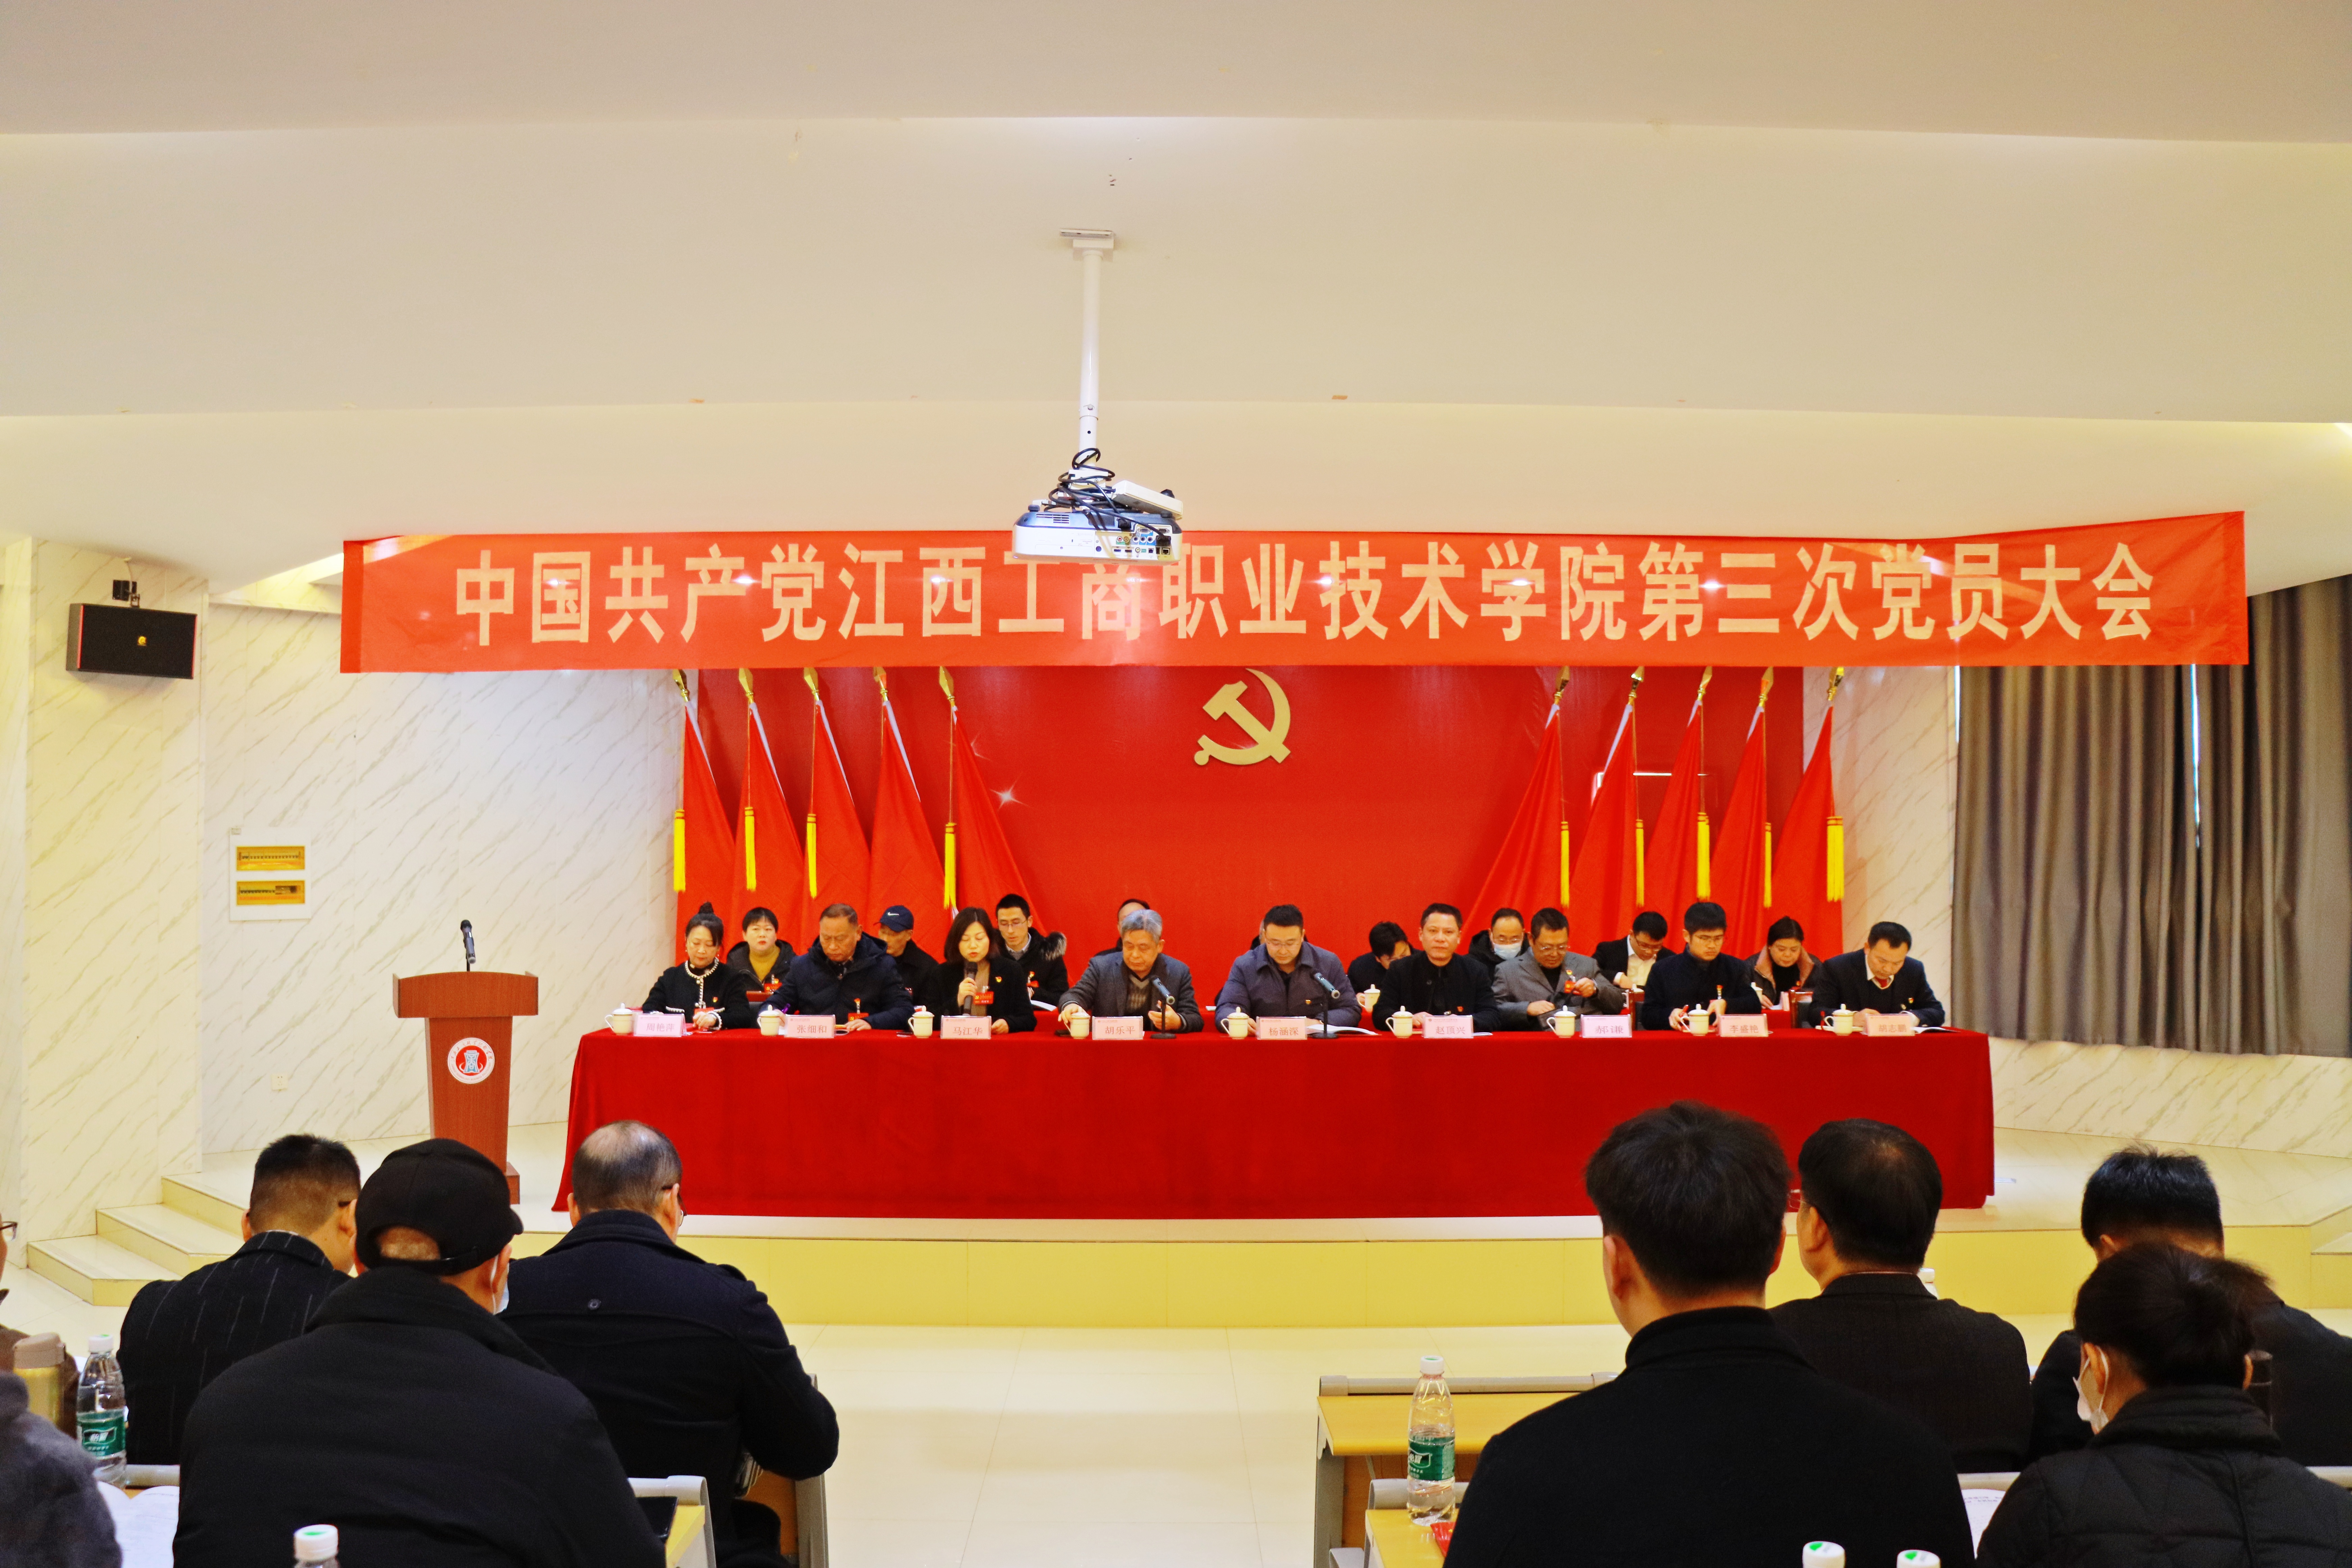 中国共产党yl34511线路中心第三次党员大会胜利召开